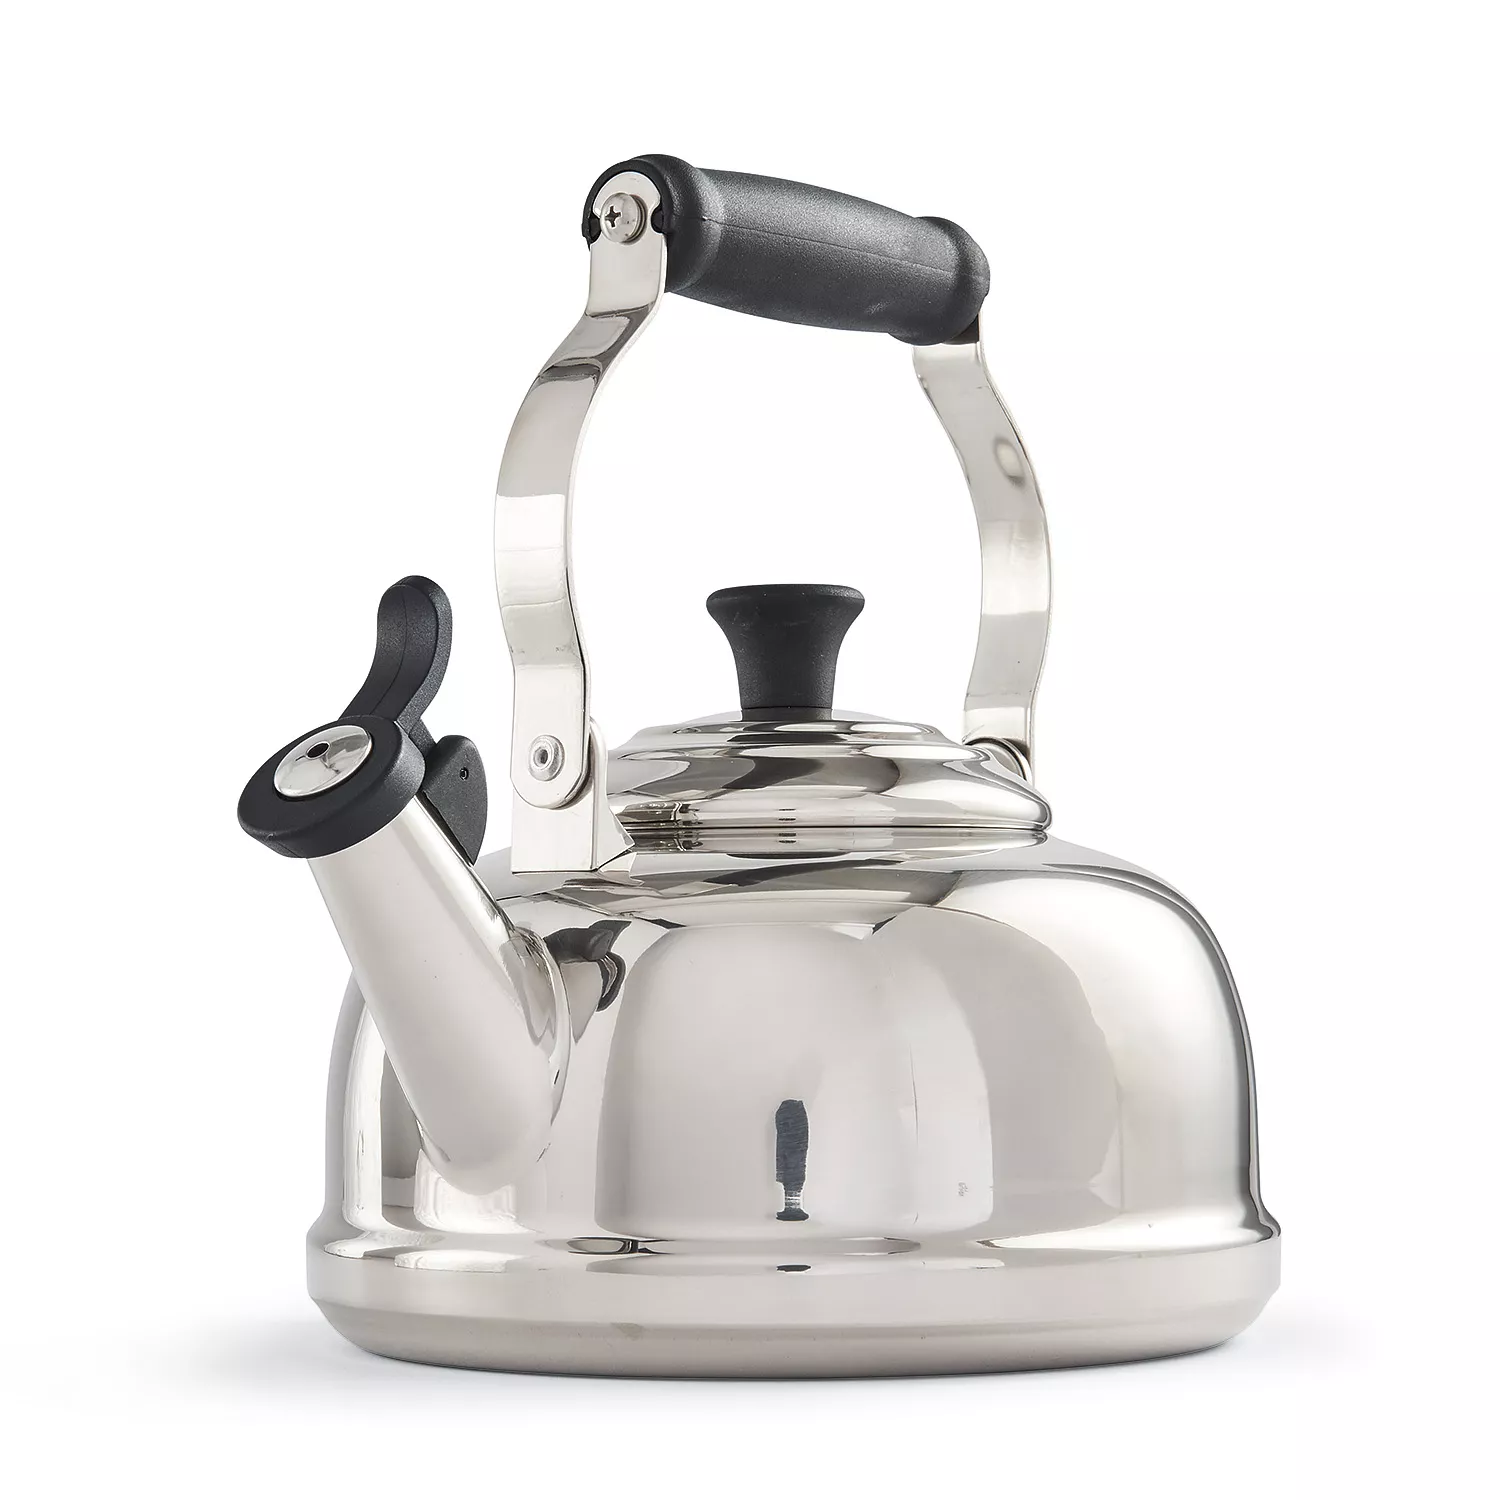  Whistling Tea Kettle Stainless Steel Teapot, Teakettle